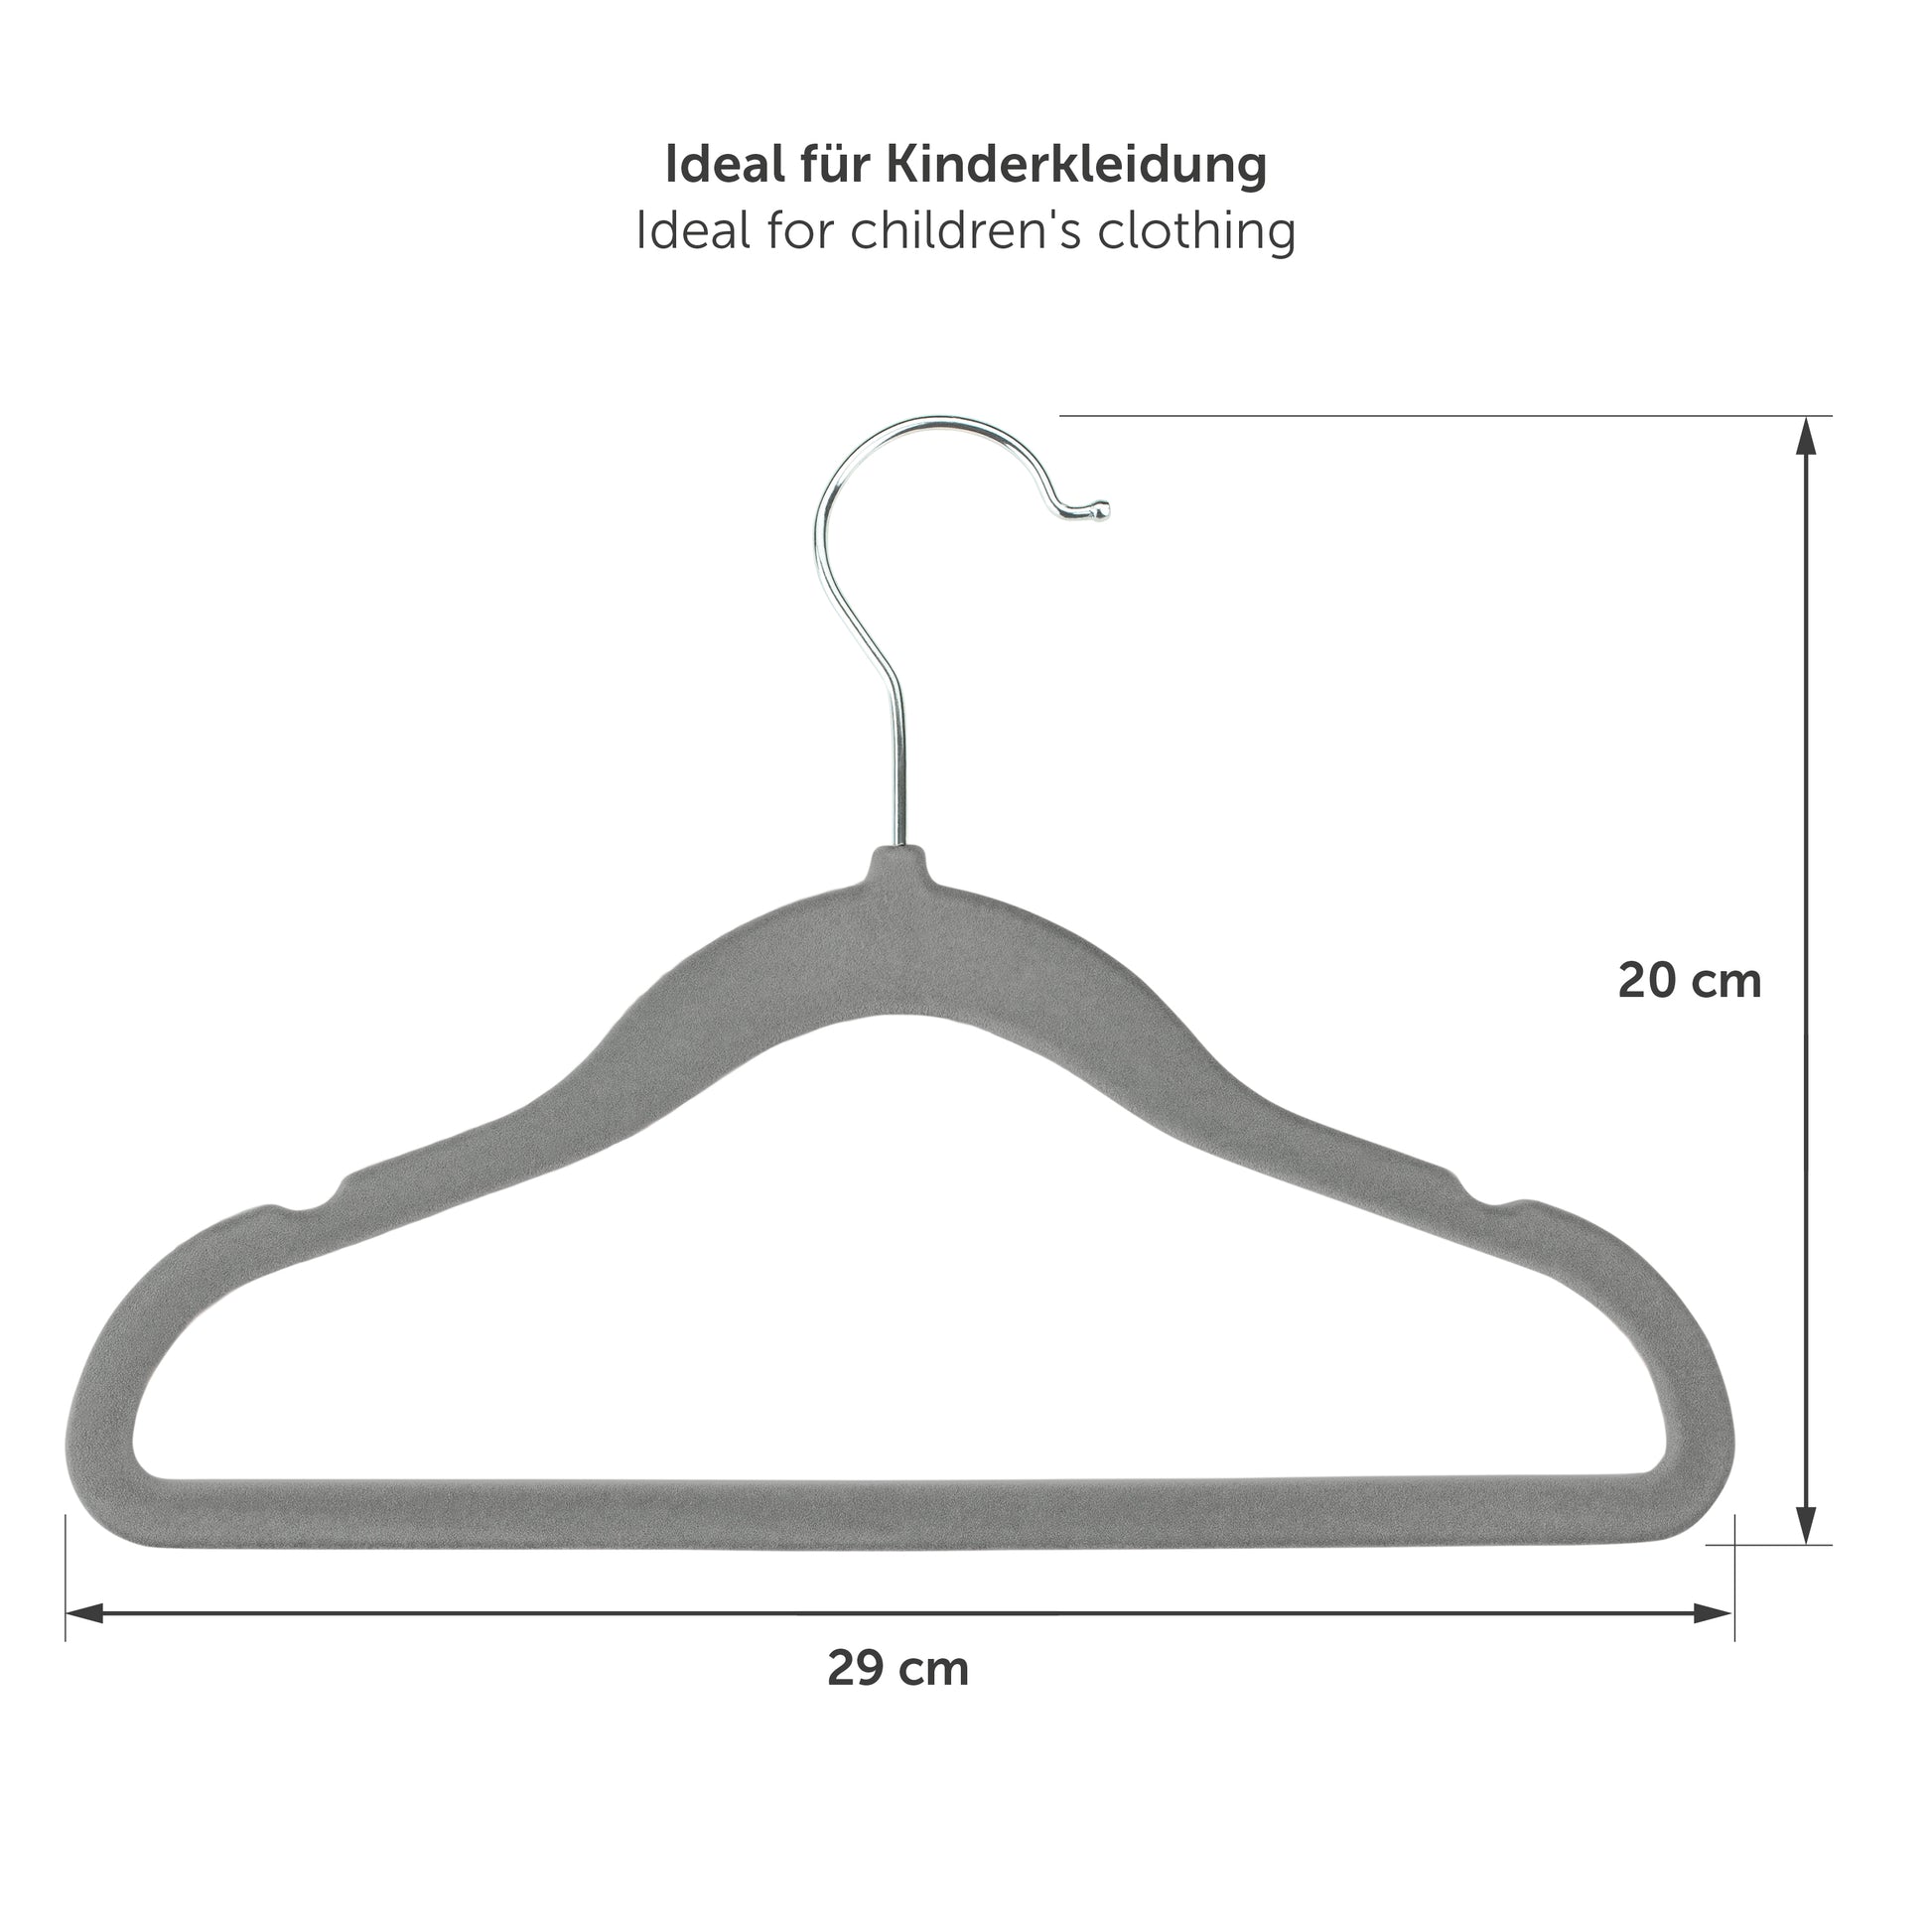 Maßangaben eines grauen Kinderkleiderbügels mit Abmessungen von 29 cm in der Breite und 20 cm in der Höhe